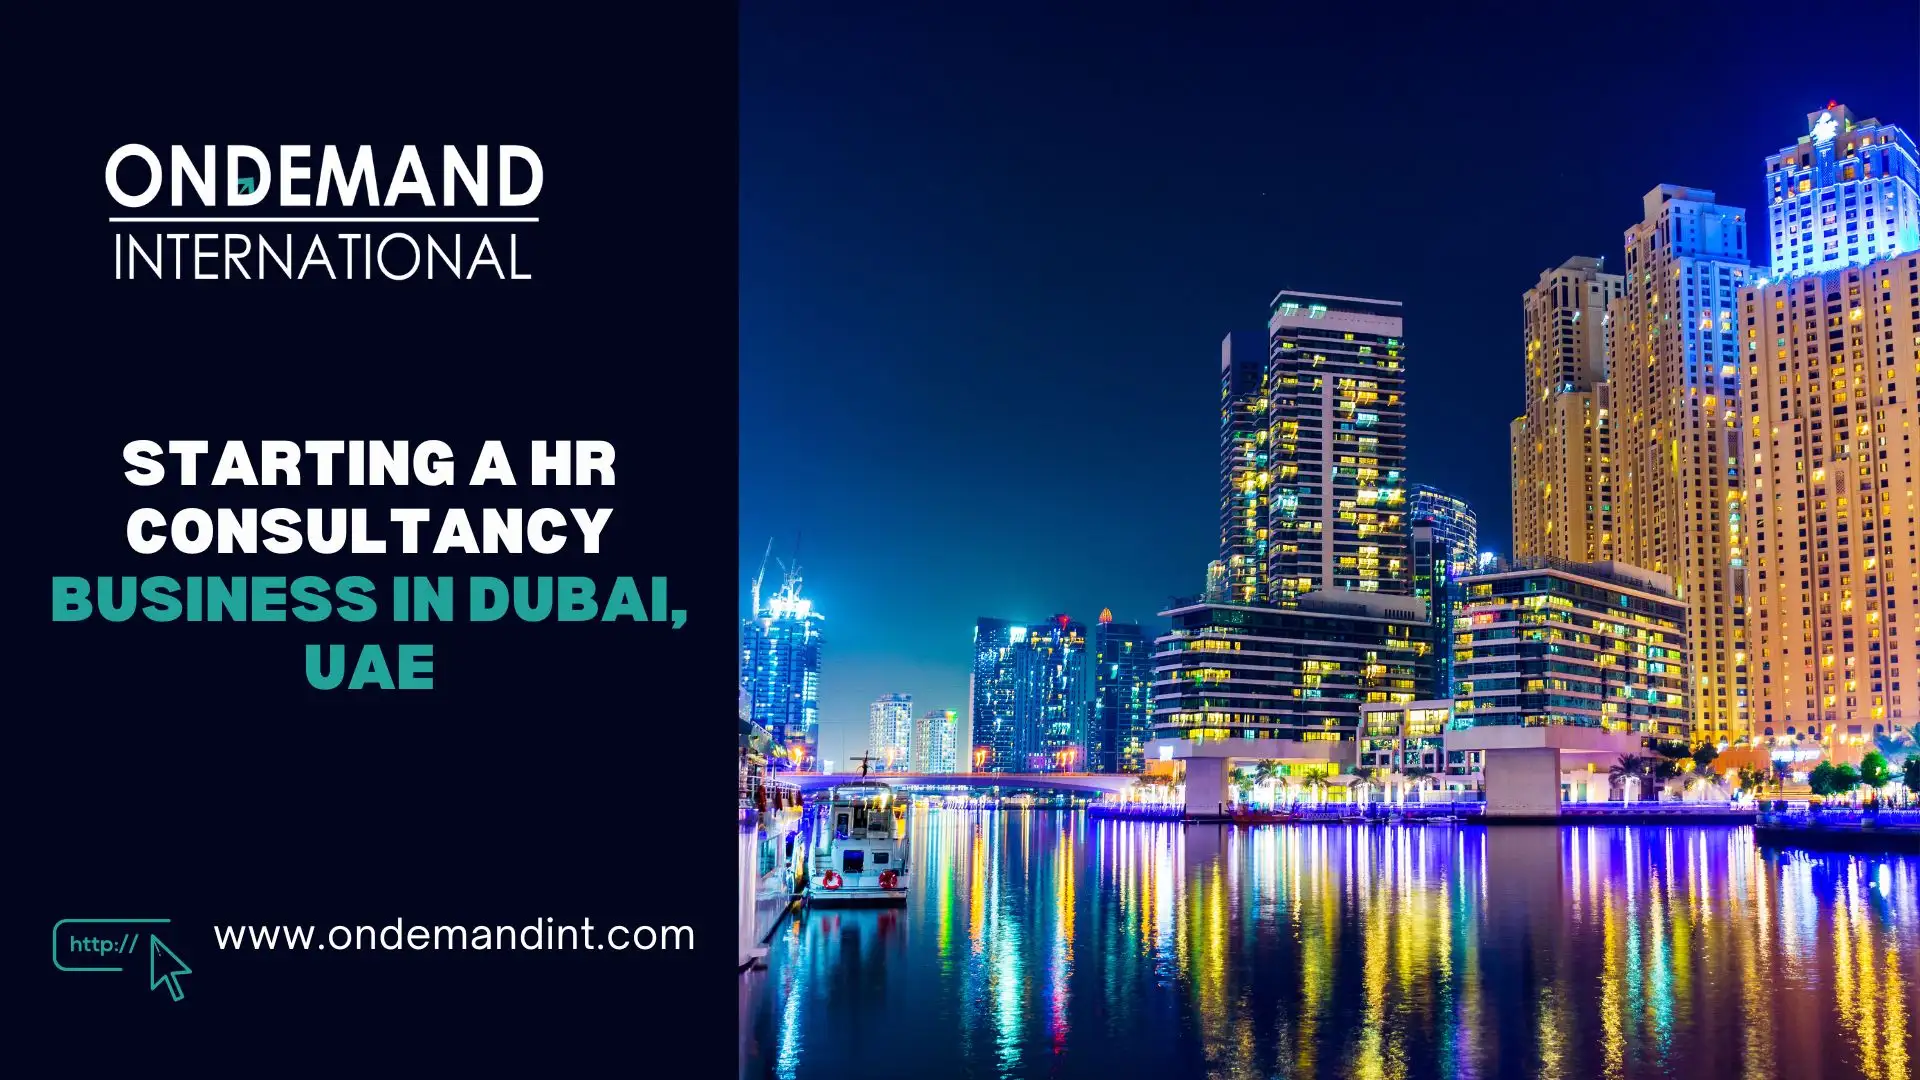 HR Consultancy Business in Dubai